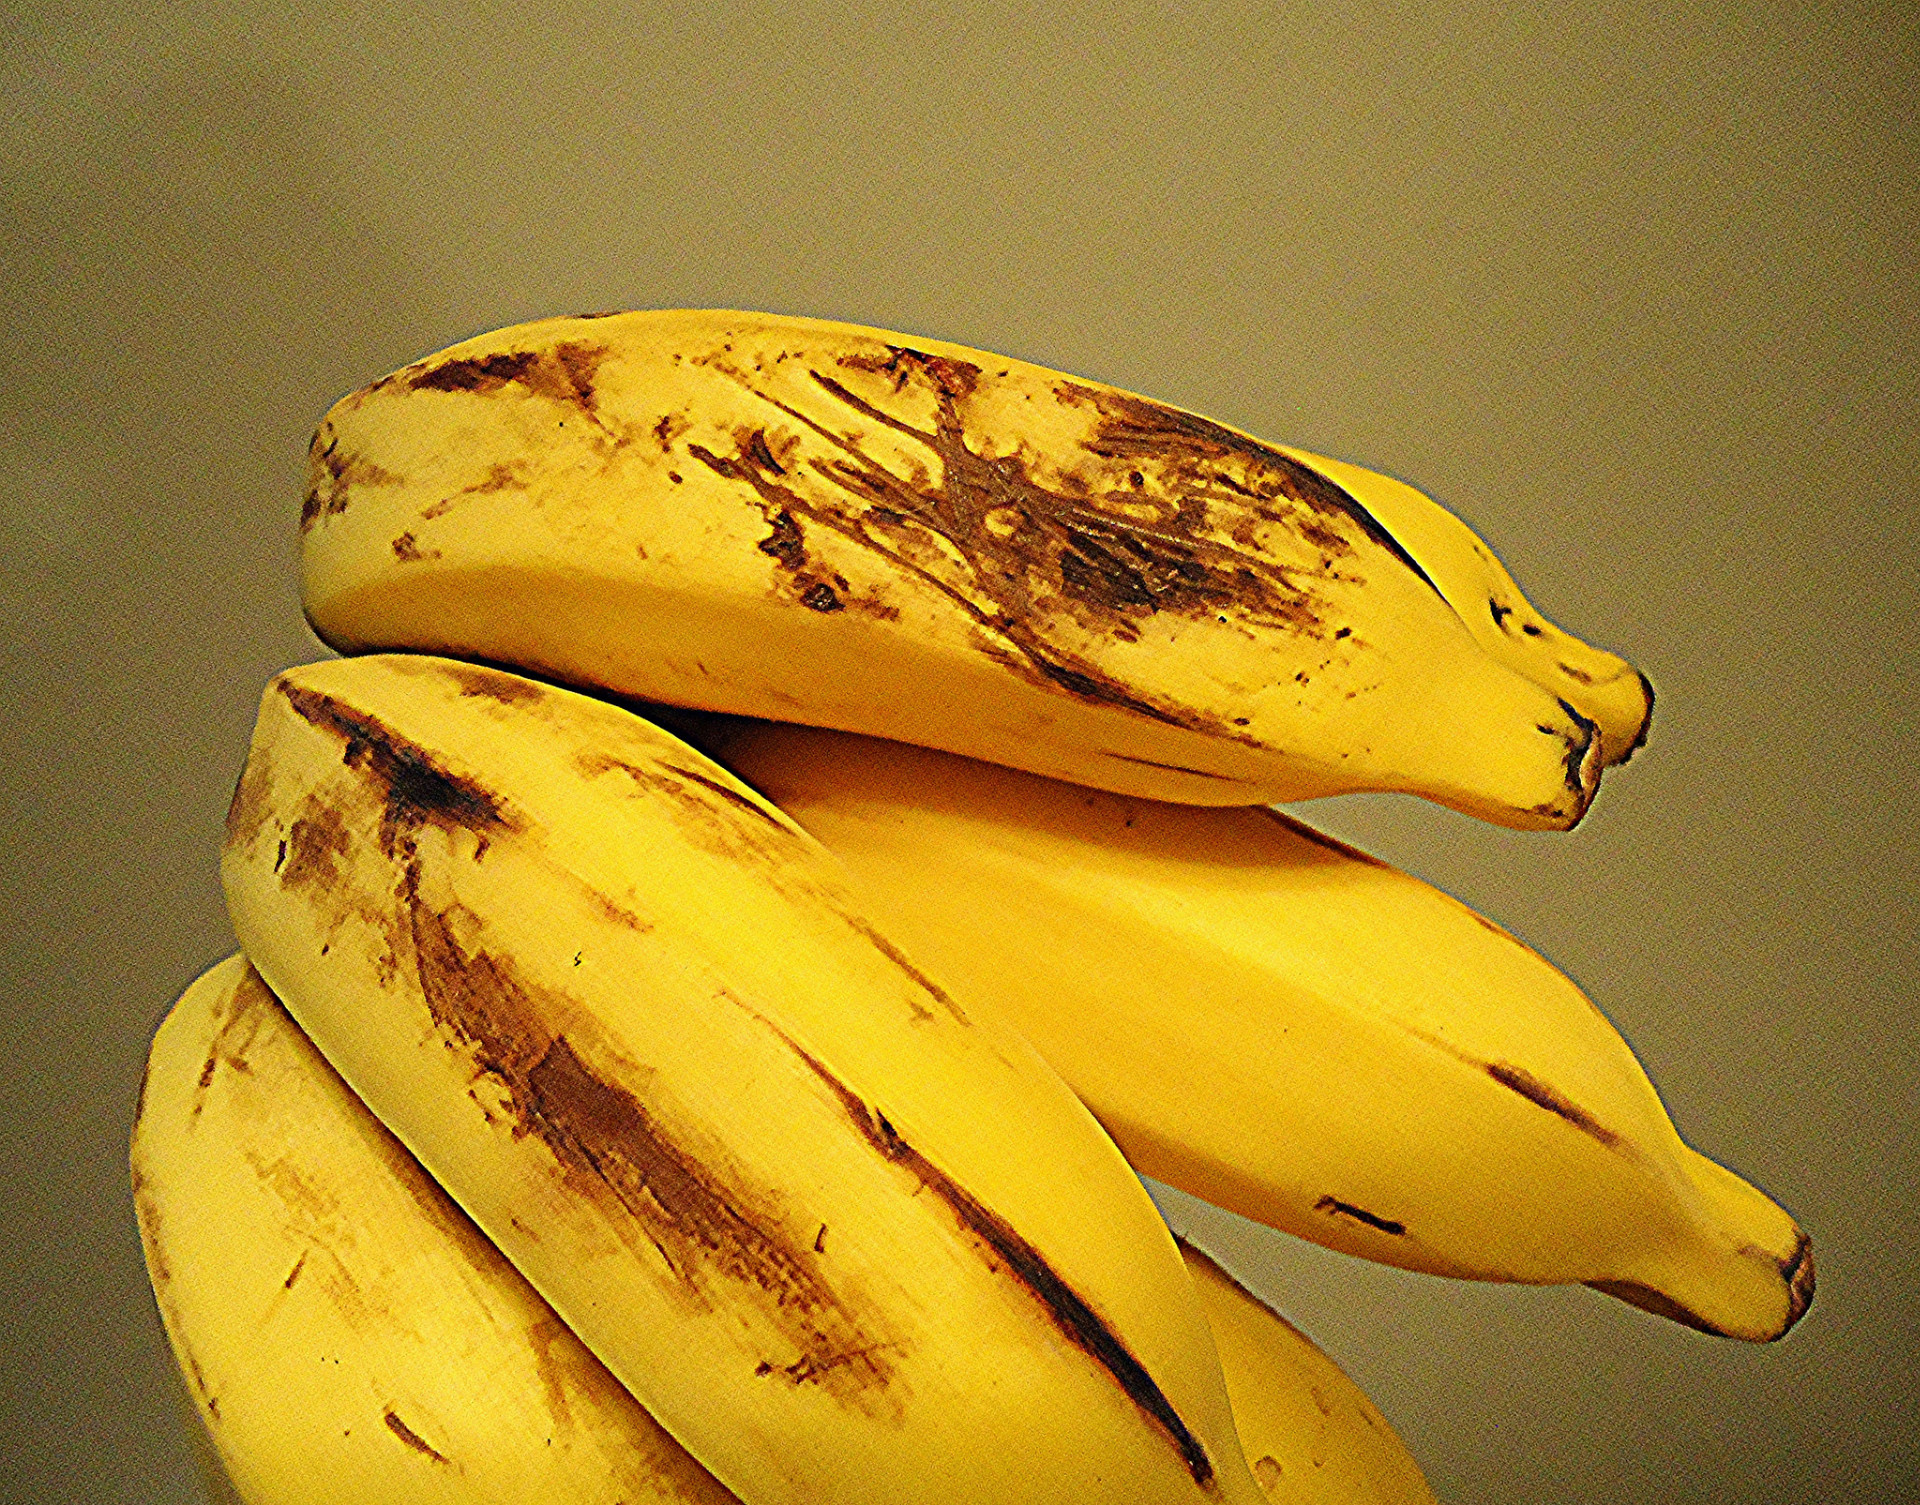 Ak chcete, aby vaše banány ostali dlhšie čerstvé, neoddeľujte ich, ale snažte sa ich držať "pohromade", spojené. 